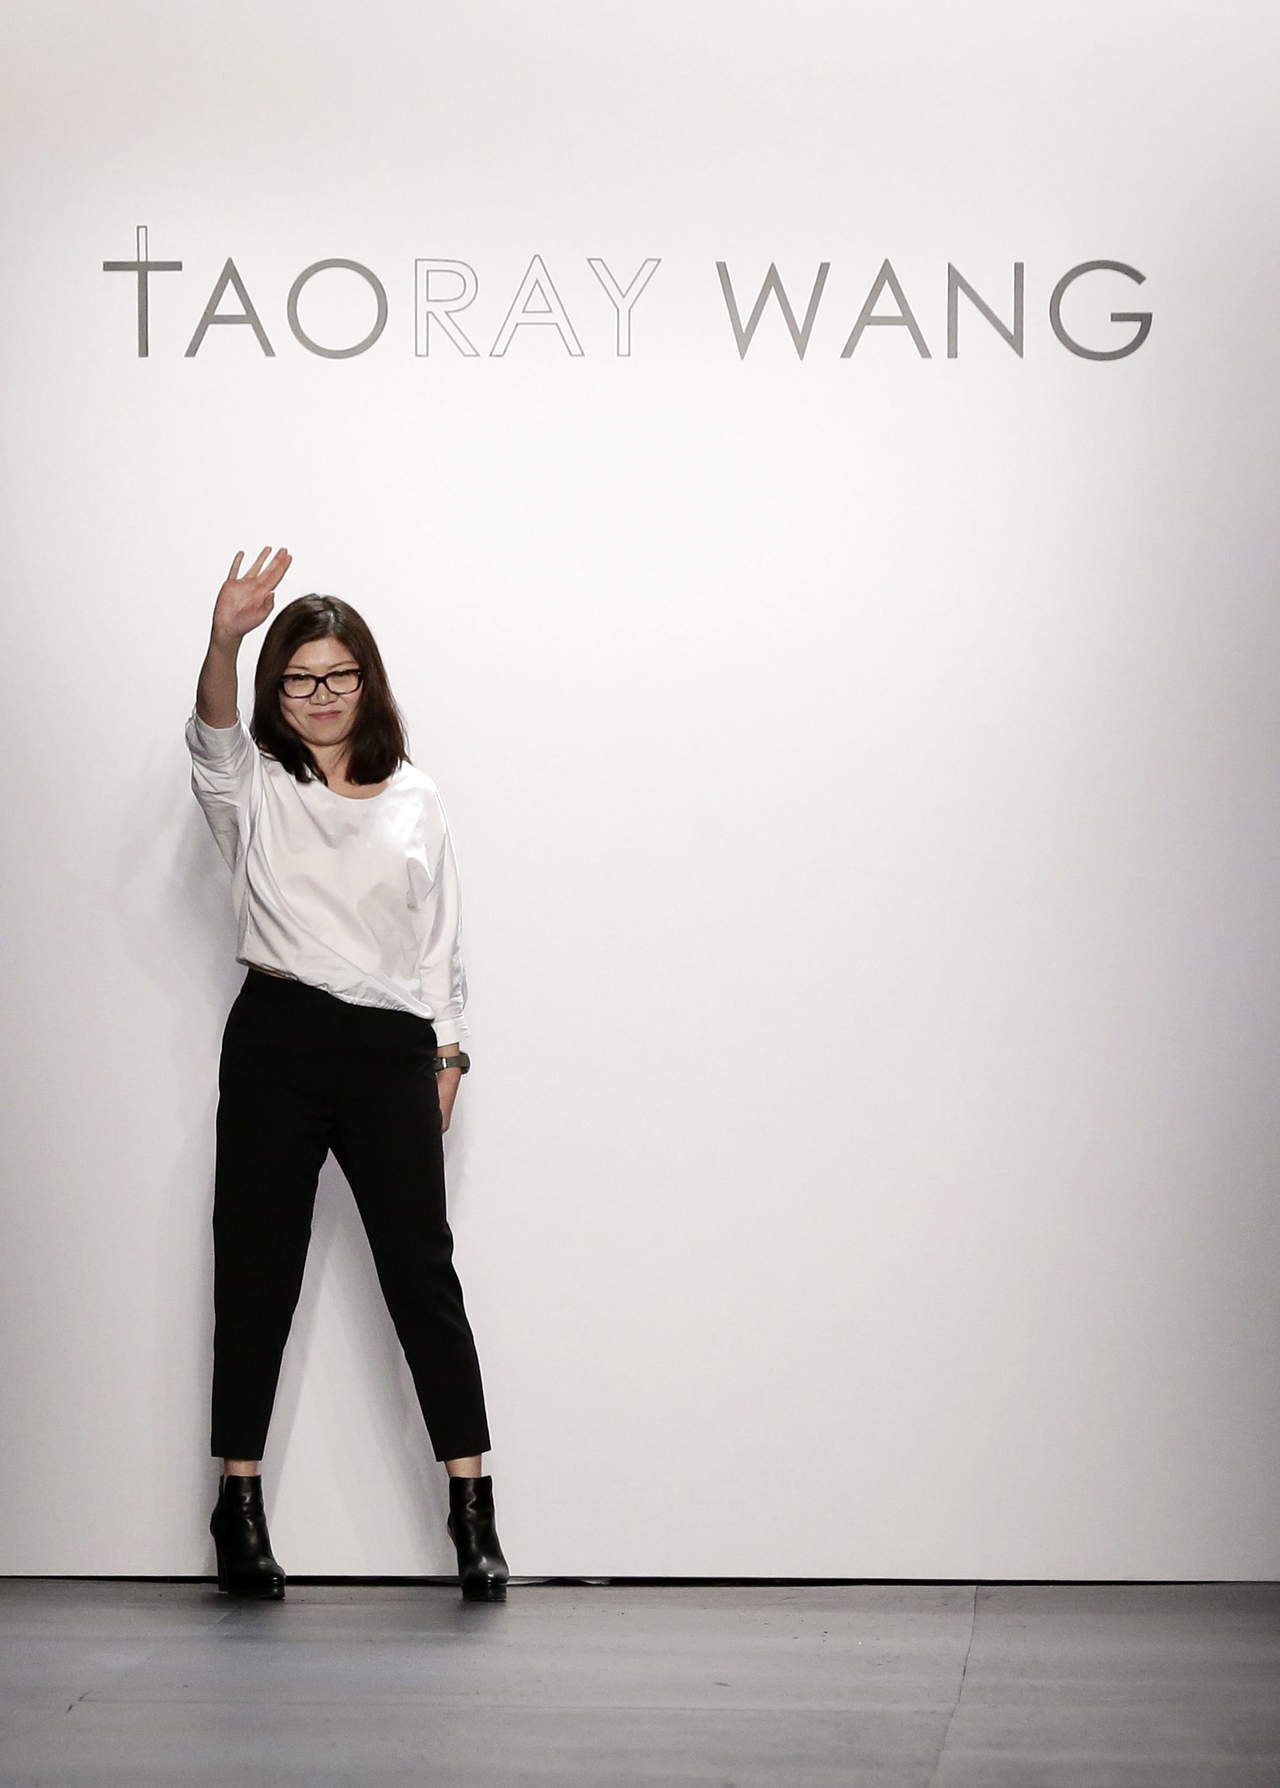 La diseñadora china Taoray
Wang, que vistió a Tiffany
Trump para el día de la inauguración
de su padre, Donald
Trump, como presidente de Estados
Unidos.
